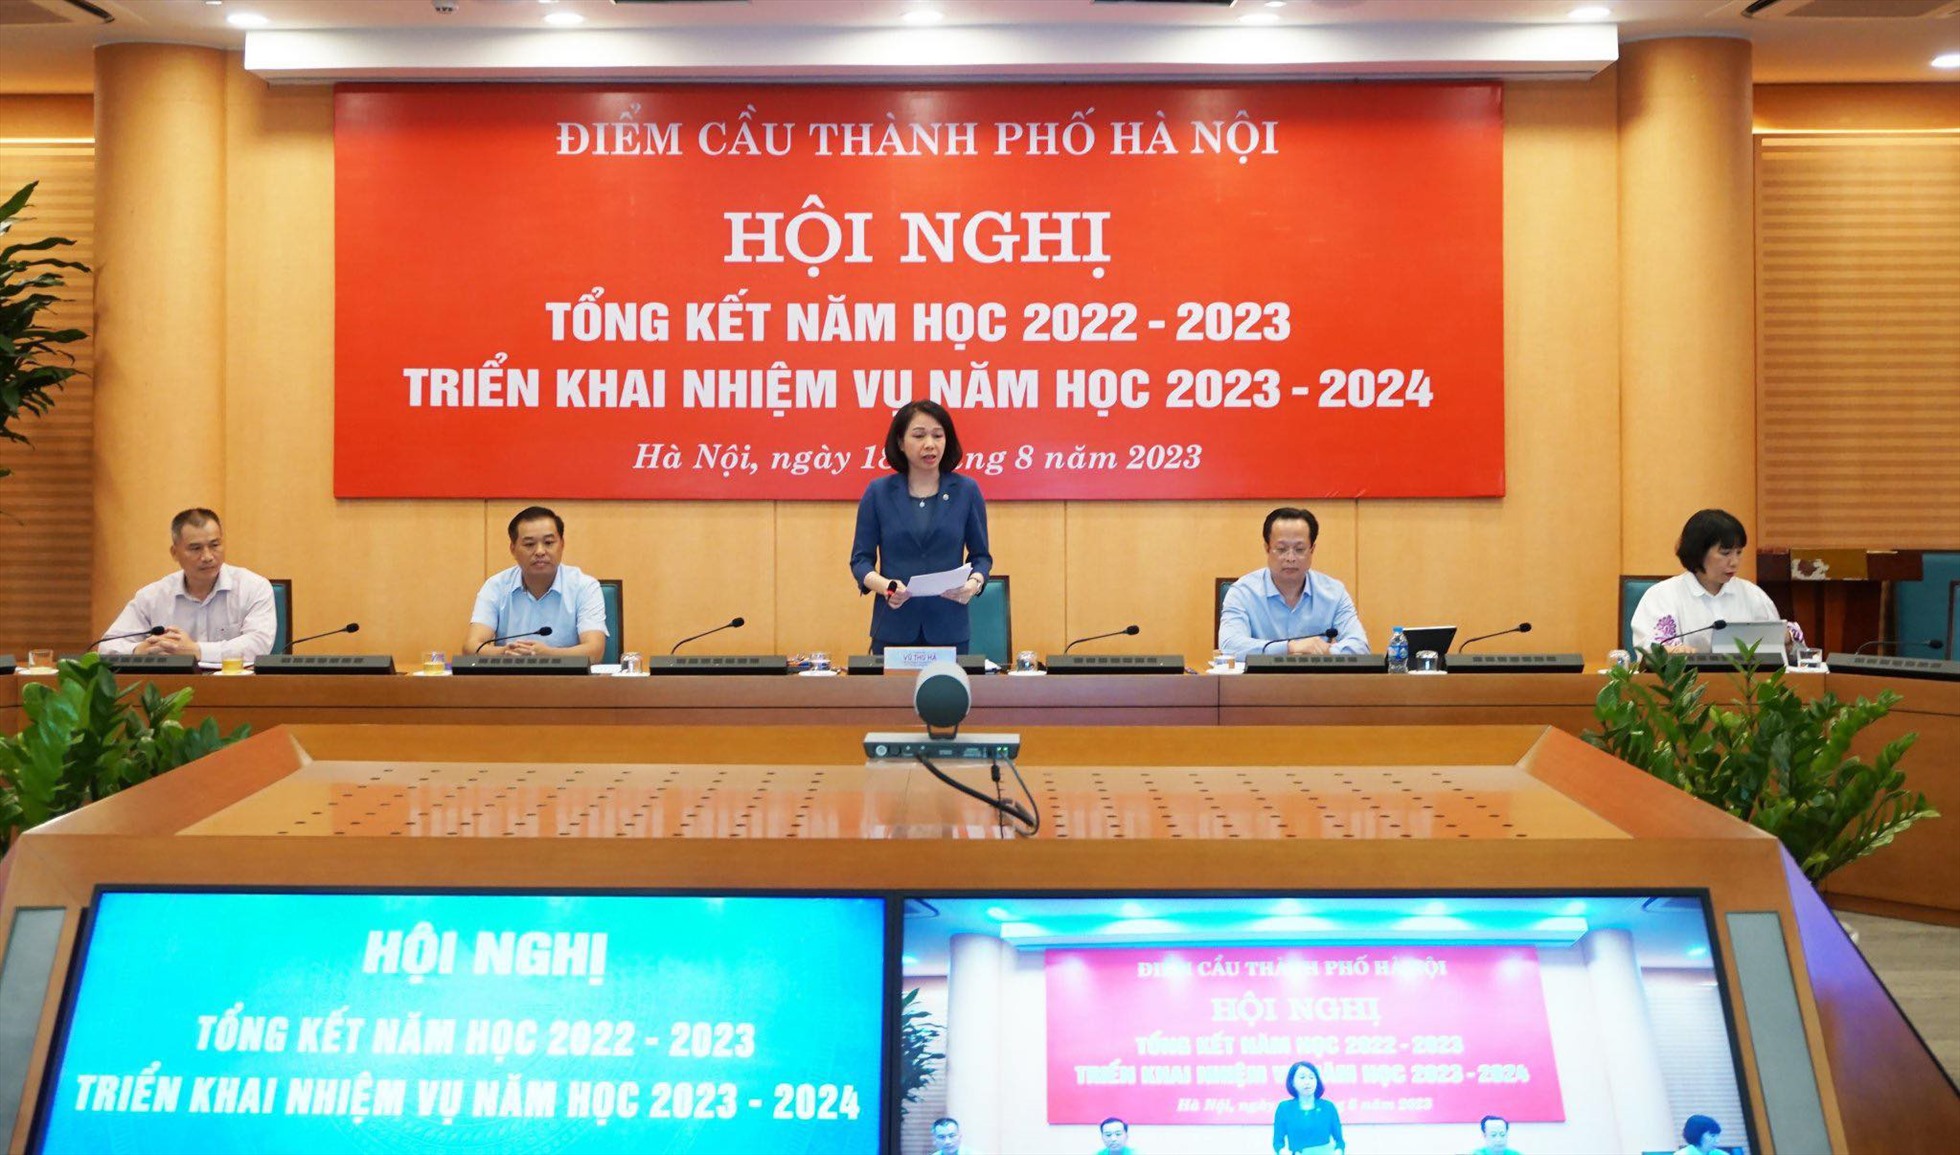 Bà Vũ Thu Hà - Phó Chủ tịch UBND TP Hà Nội phát biểu tại điểm cầu Hà Nội.